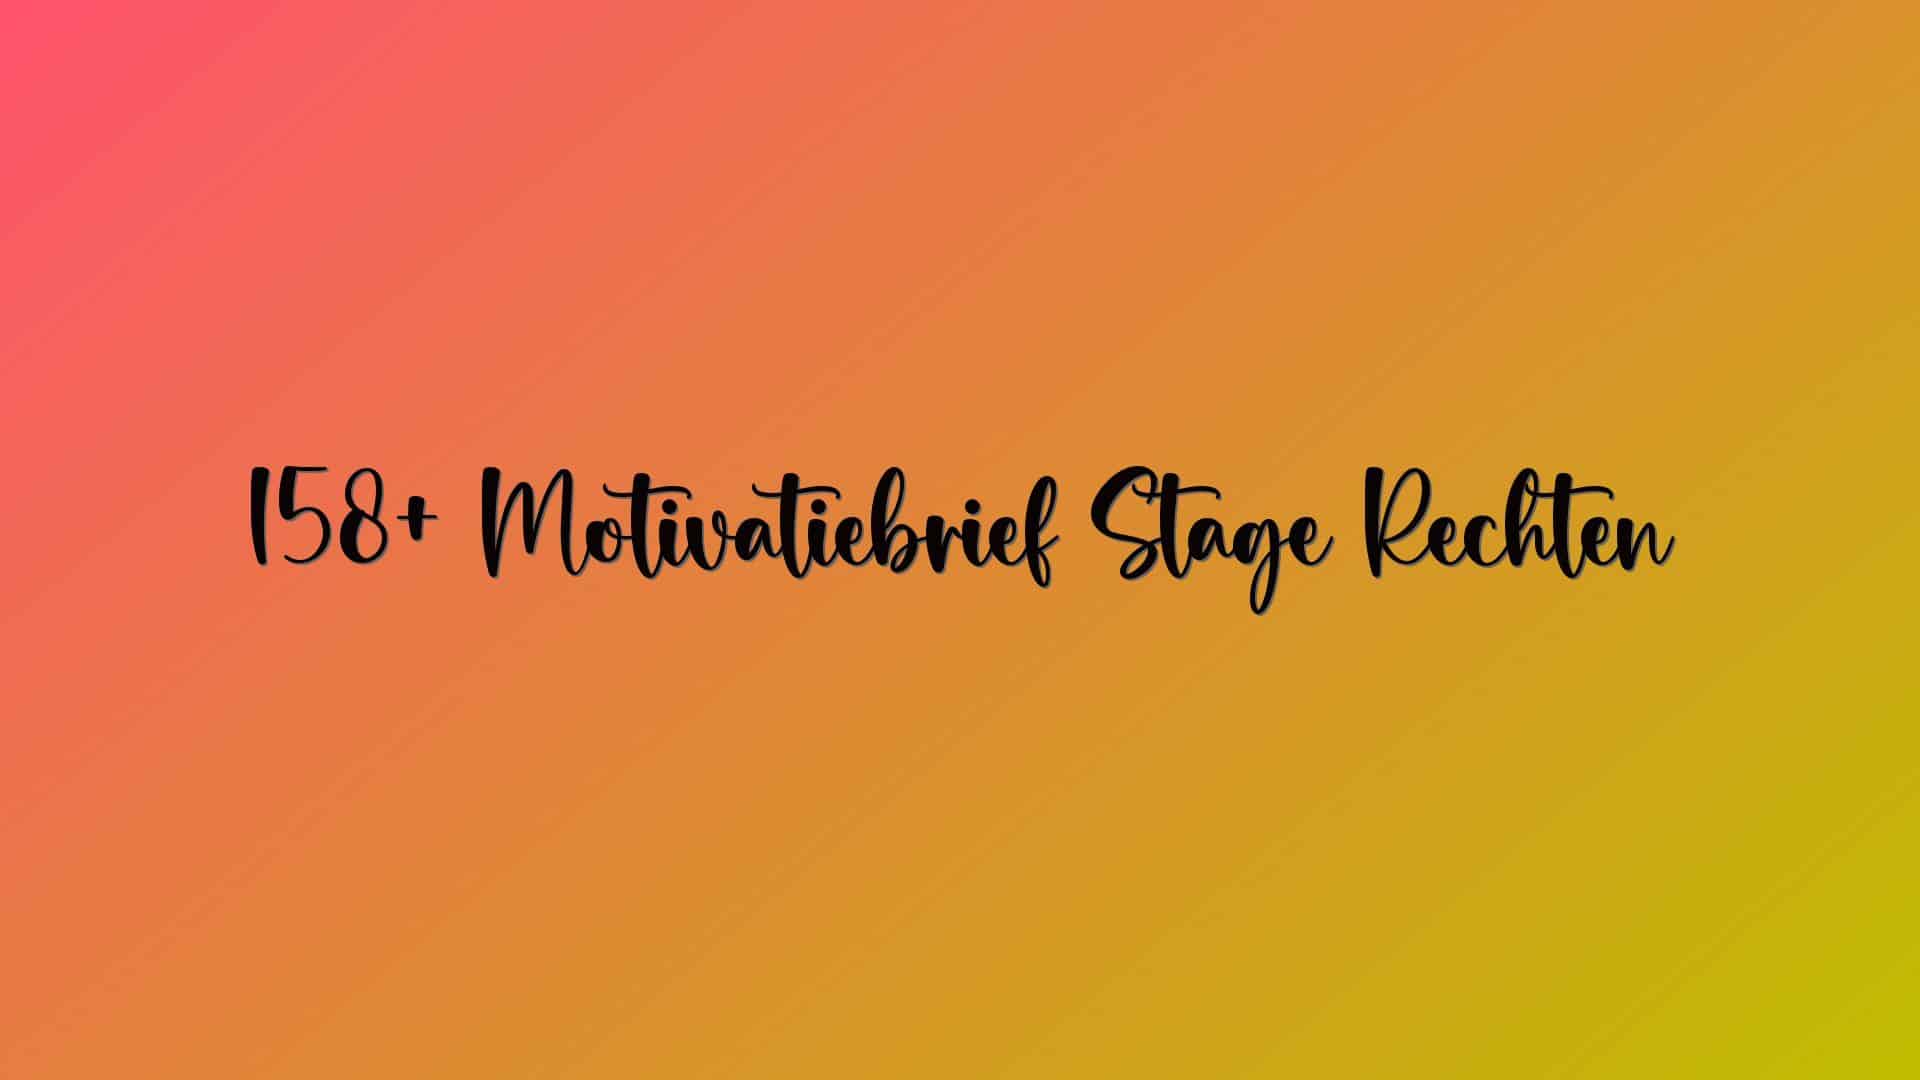 158+ Motivatiebrief Stage Rechten